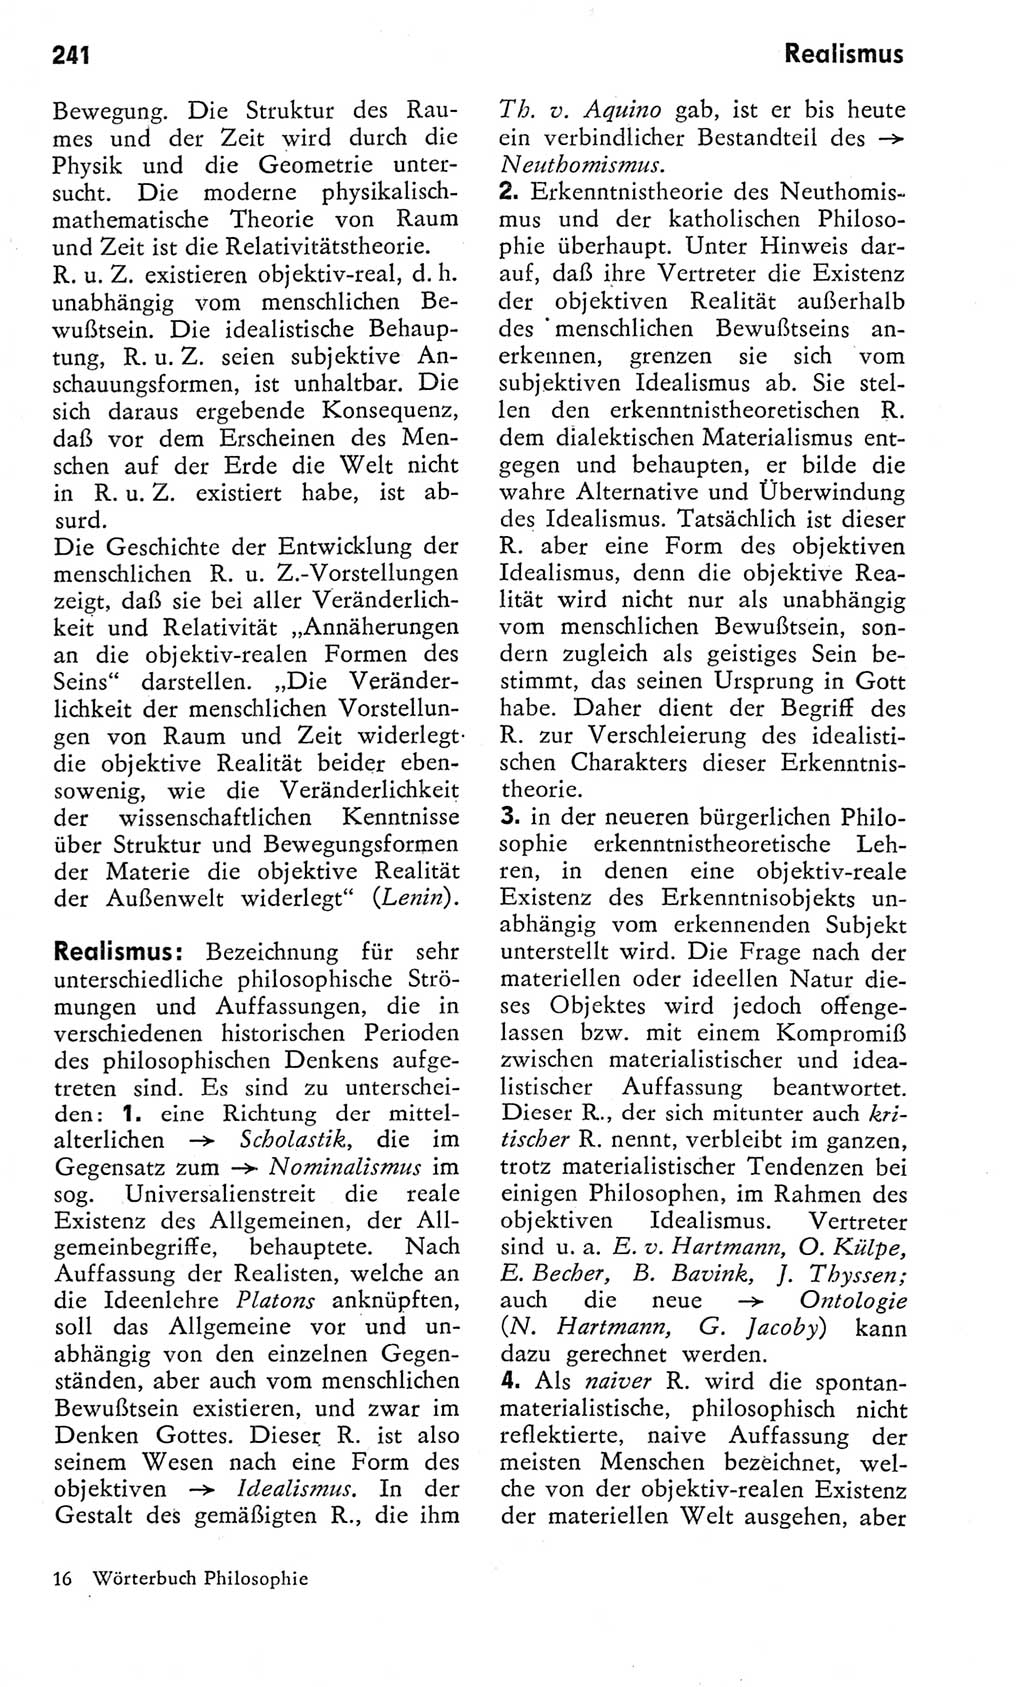 Kleines Wörterbuch der marxistisch-leninistischen Philosophie [Deutsche Demokratische Republik (DDR)] 1975, Seite 241 (Kl. Wb. ML Phil. DDR 1975, S. 241)